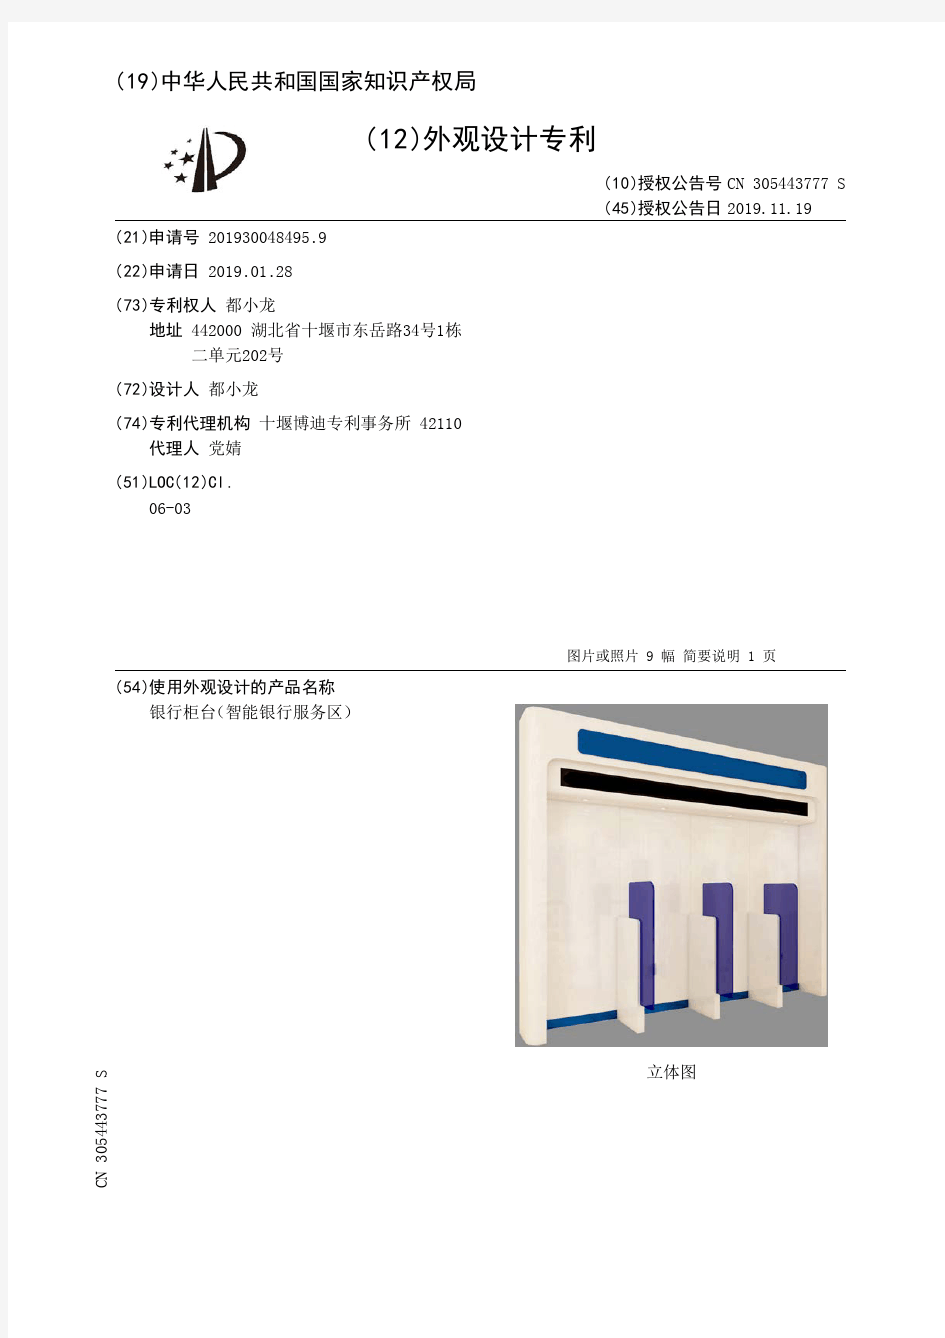 【CN305443777S】银行柜台智能银行服务区【专利】